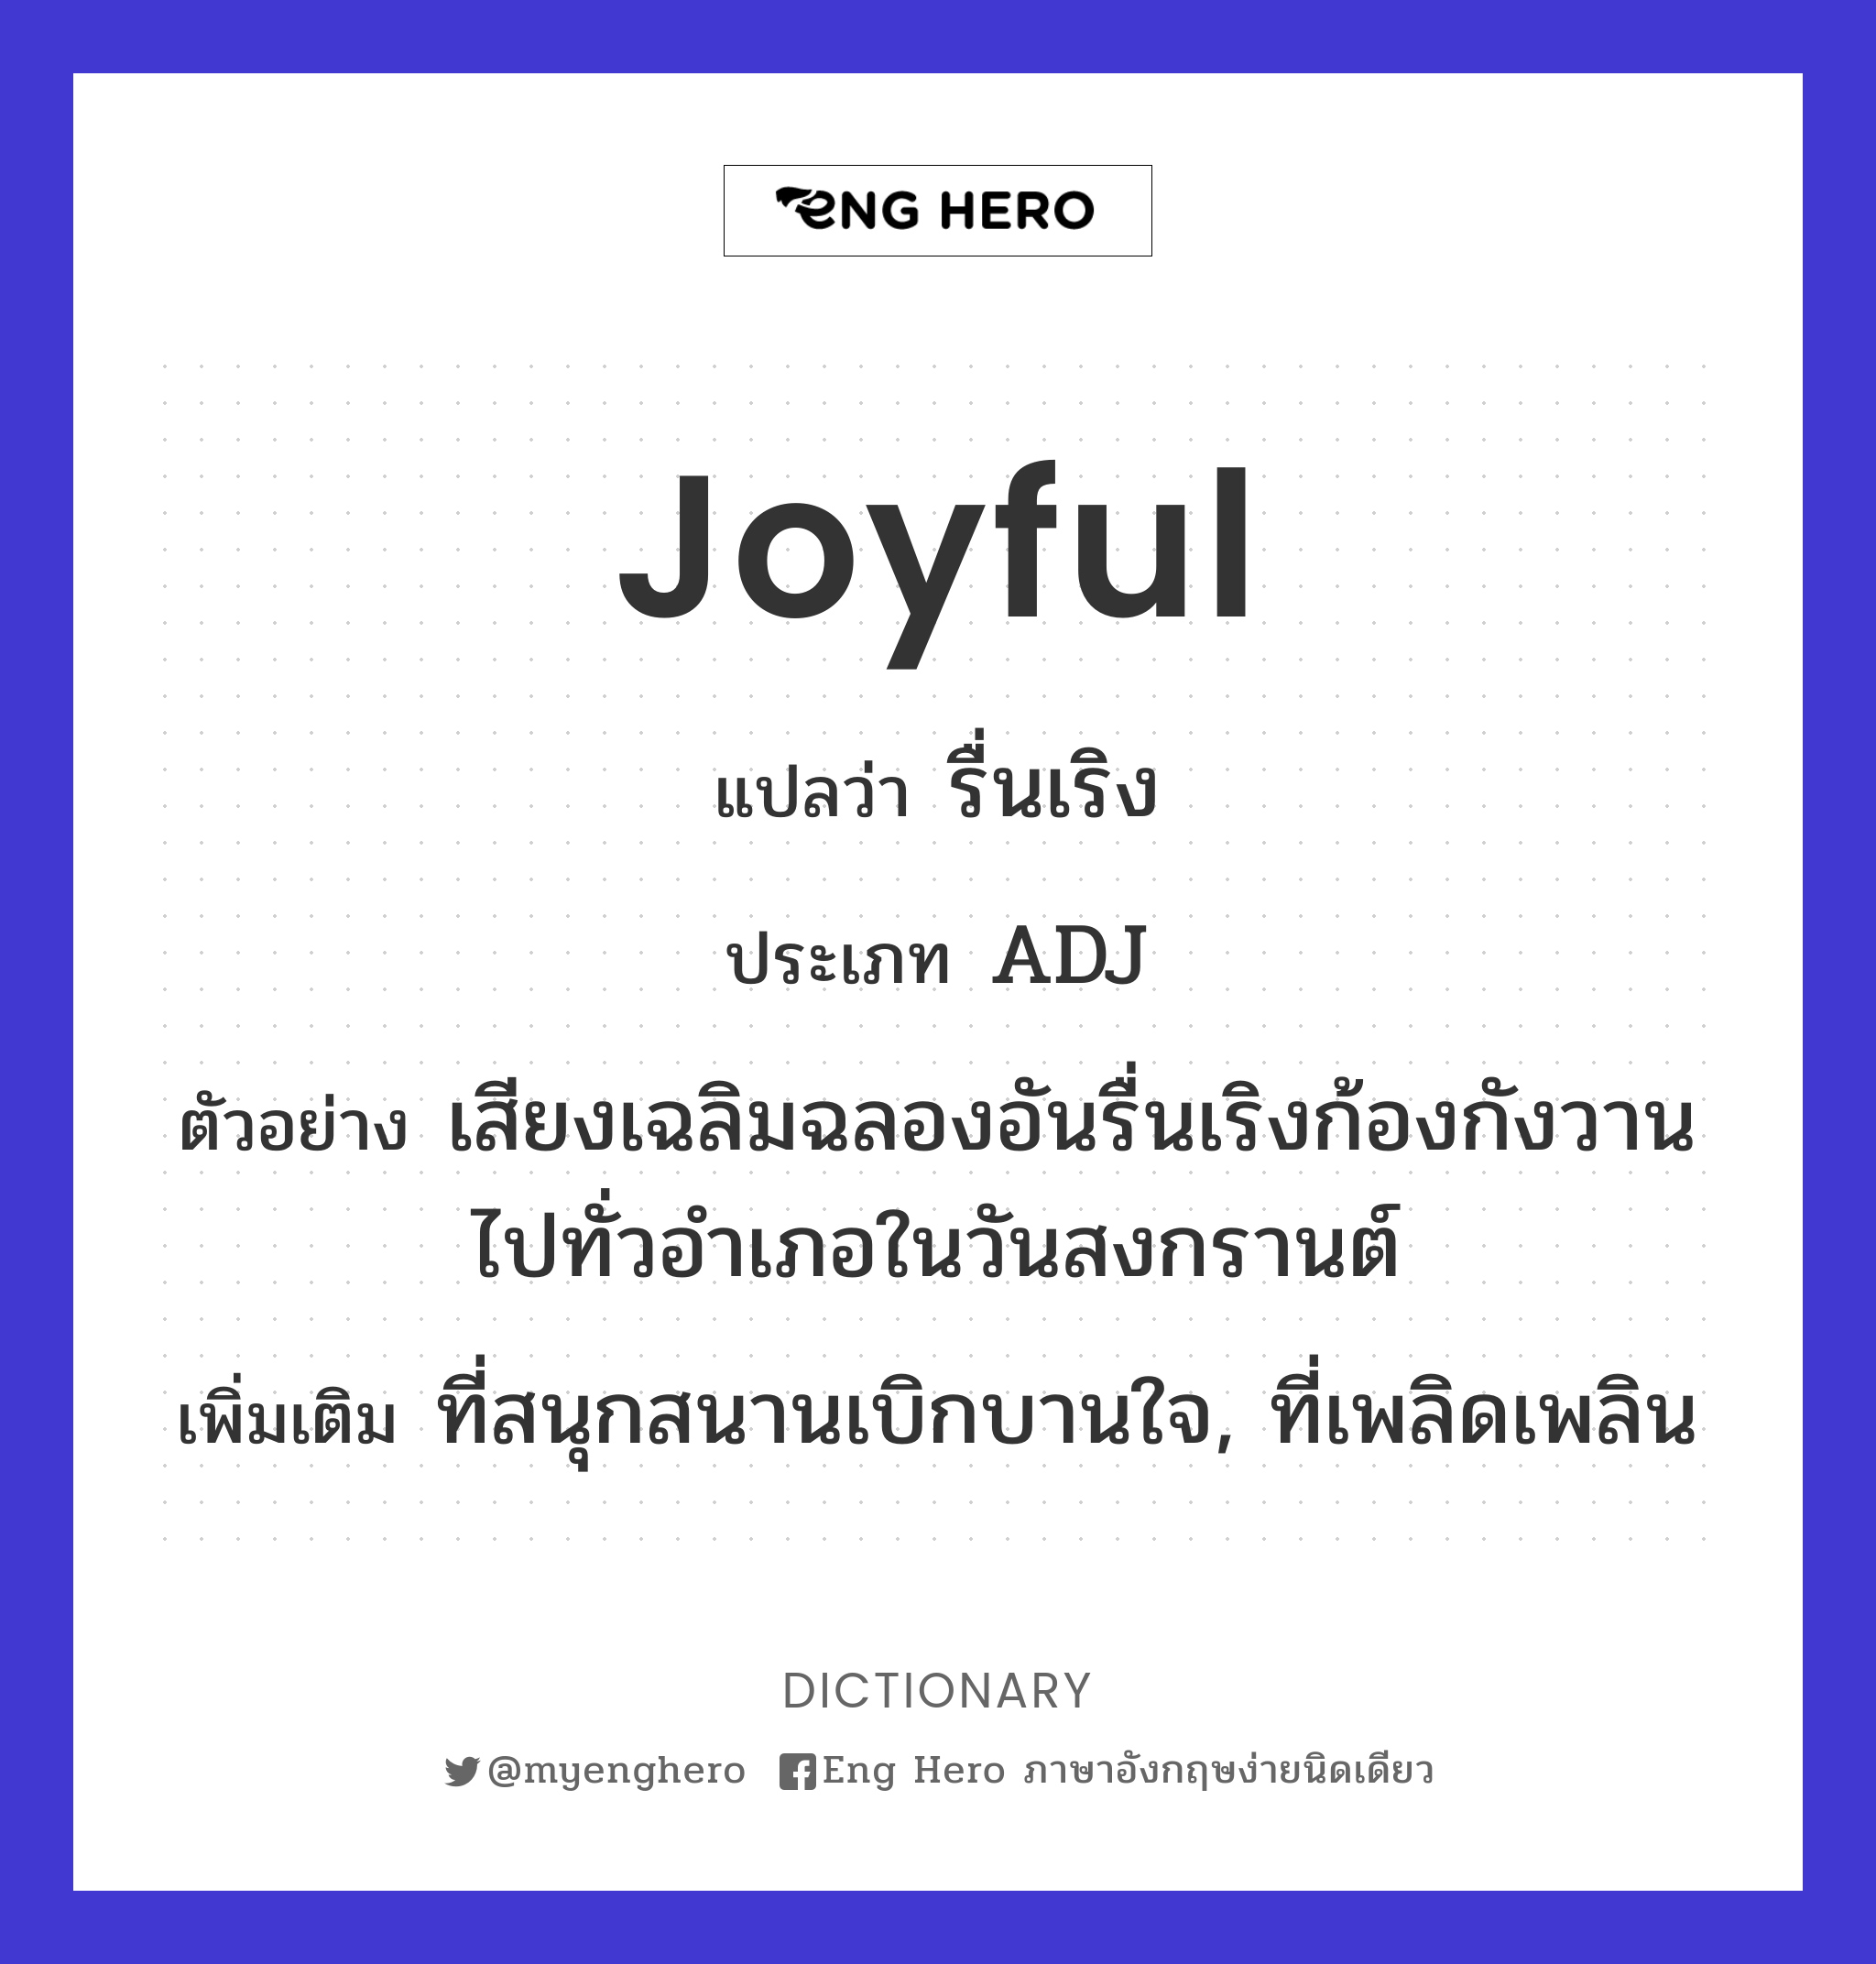 joyful